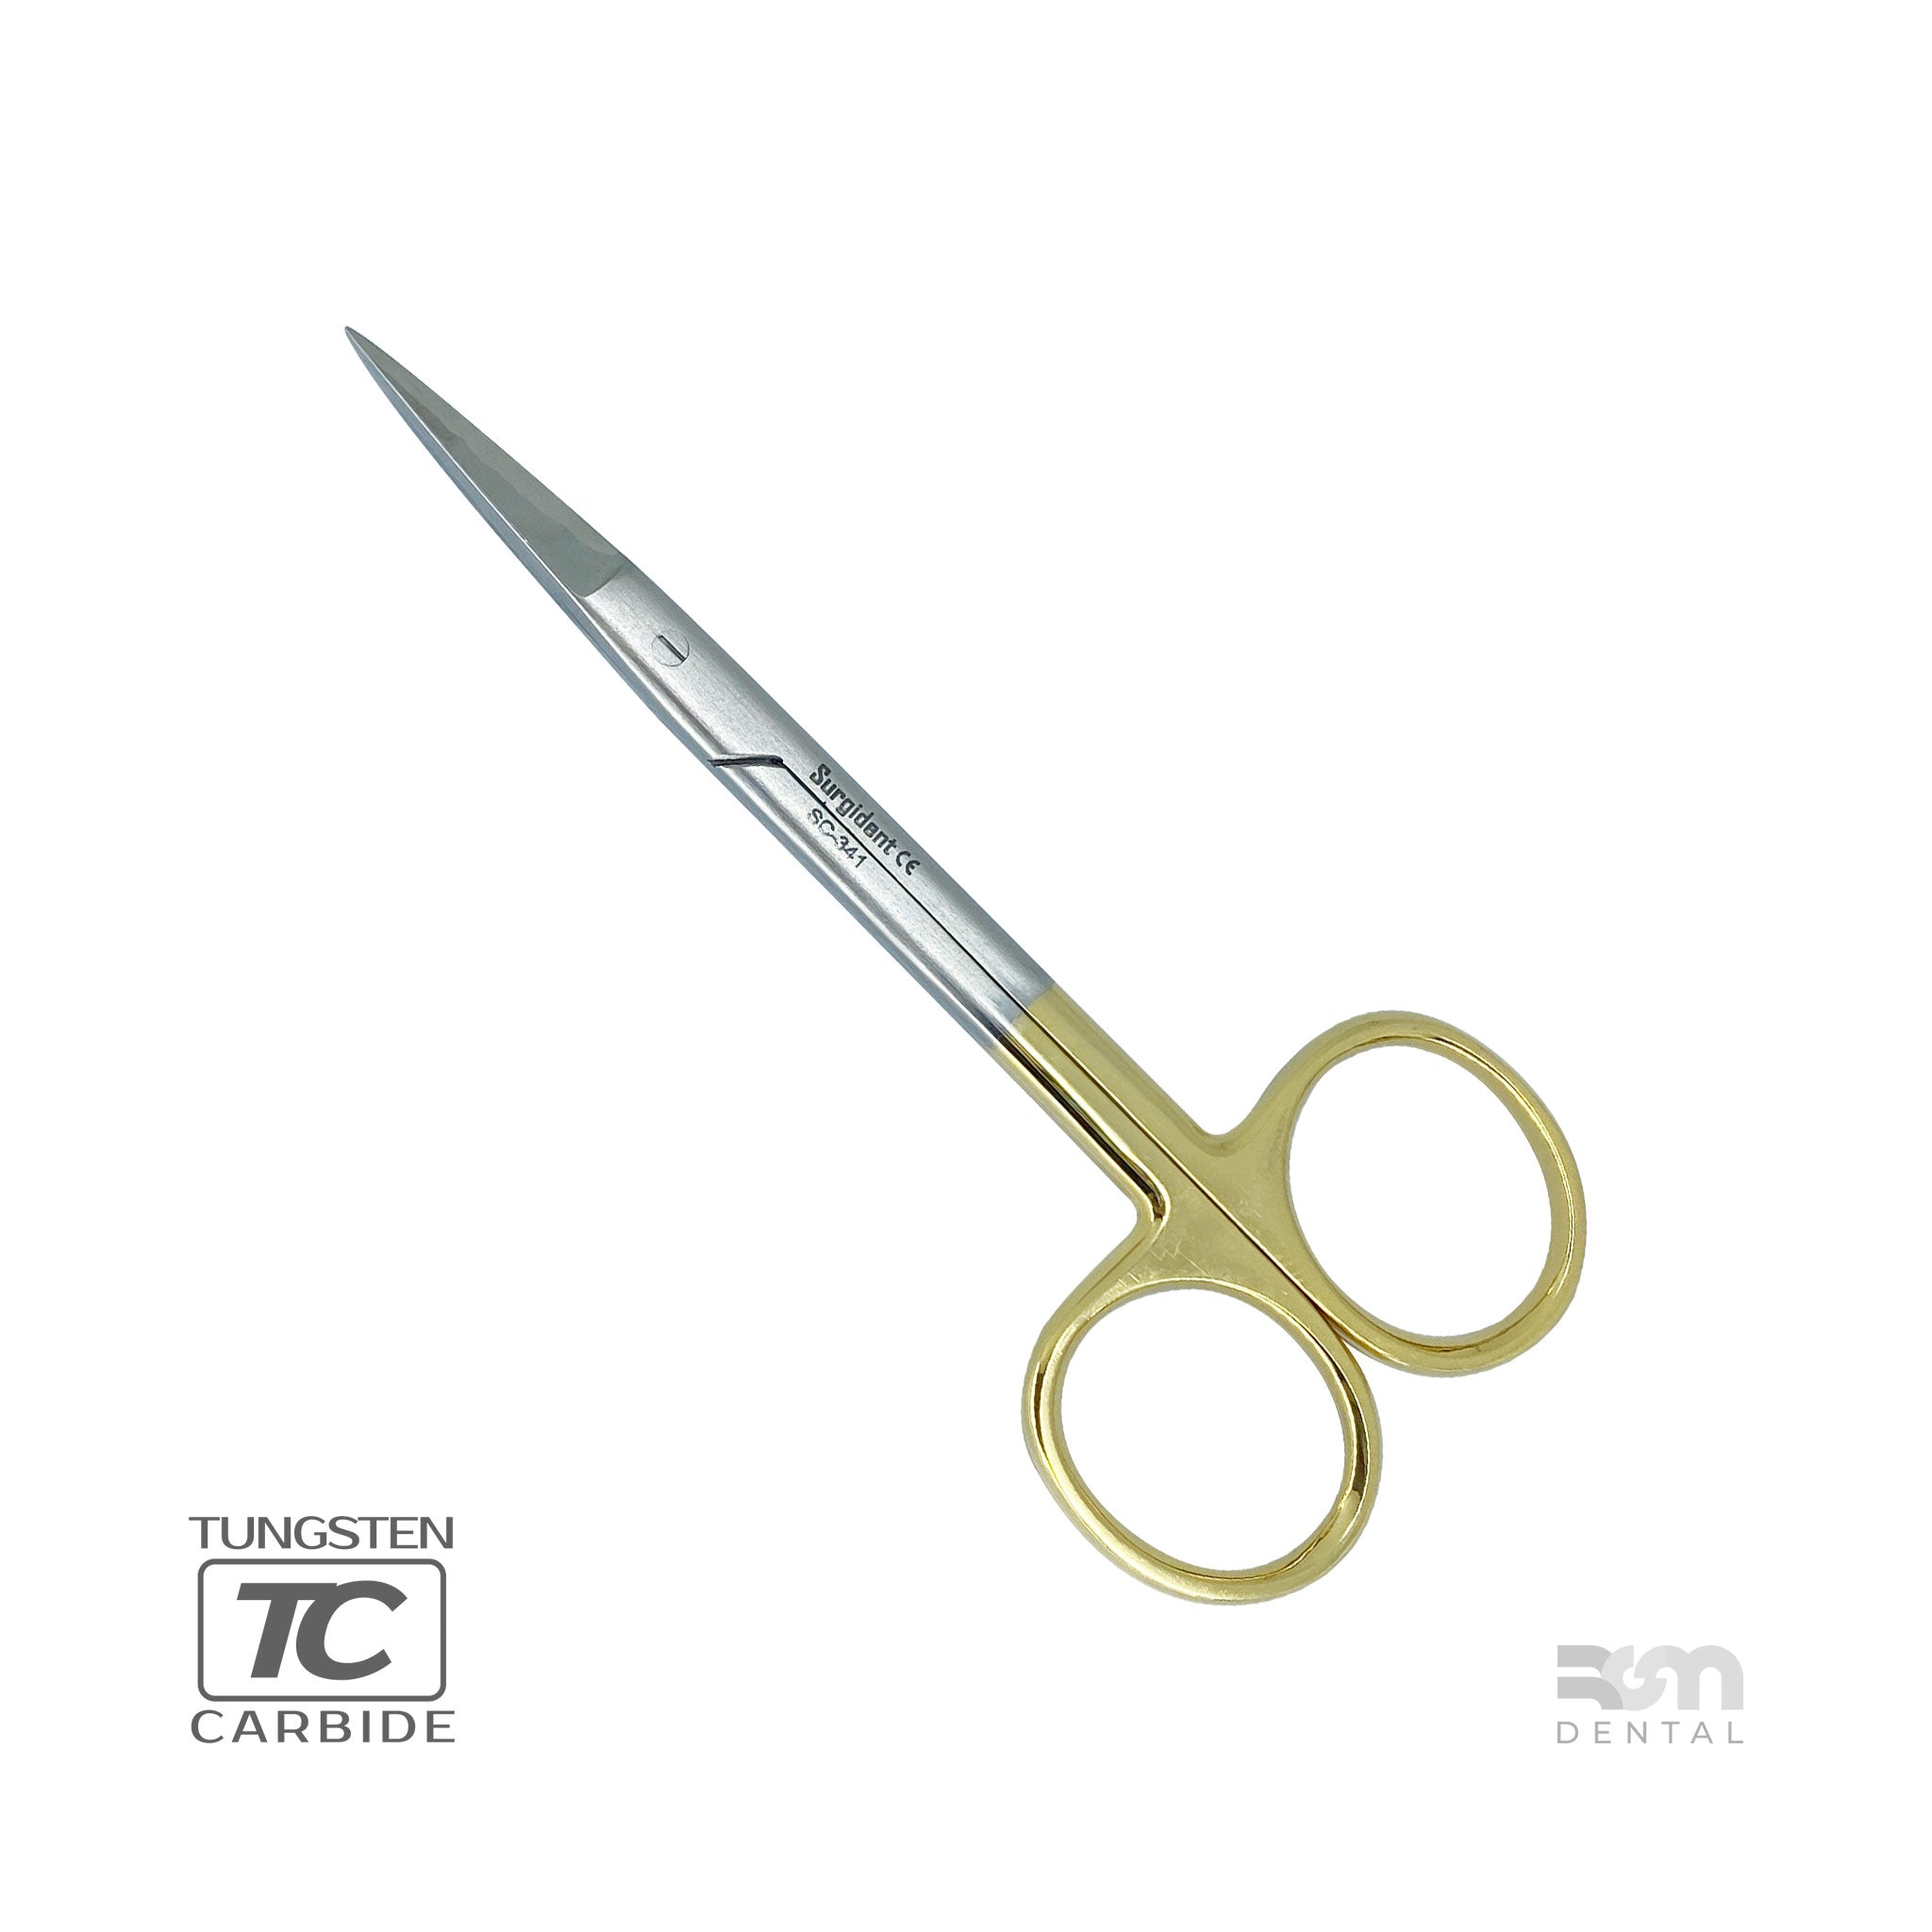 Iris Scissors S5082 : T/C 11cm Straight